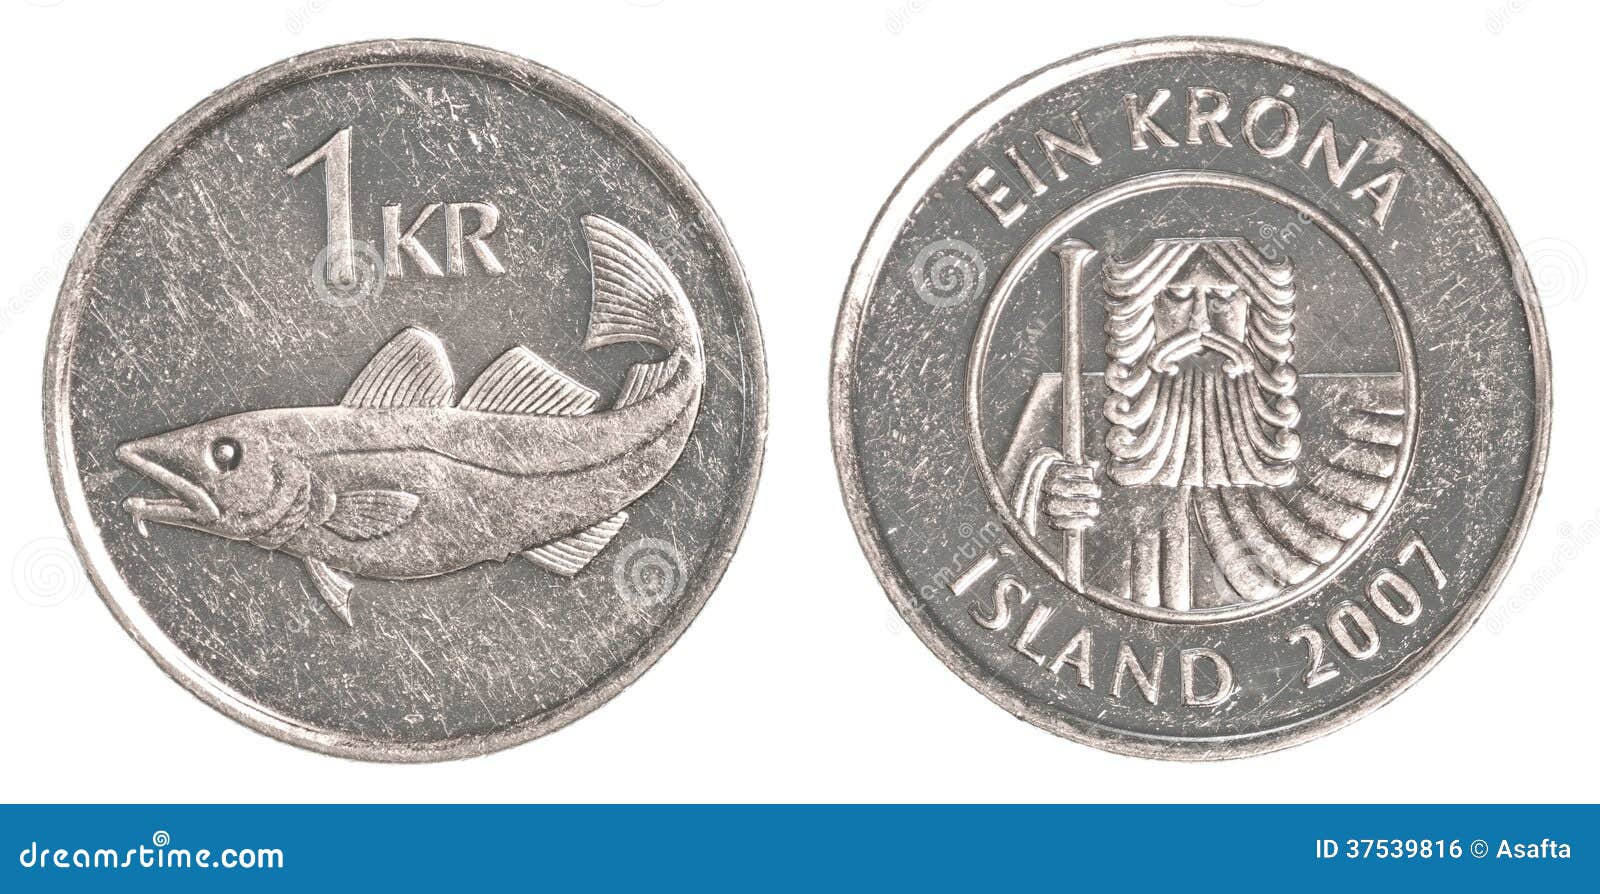 挪威1990年1克朗实物如图UNC-价格:6元-se88199868-外国钱币-零售-7788收藏__收藏热线